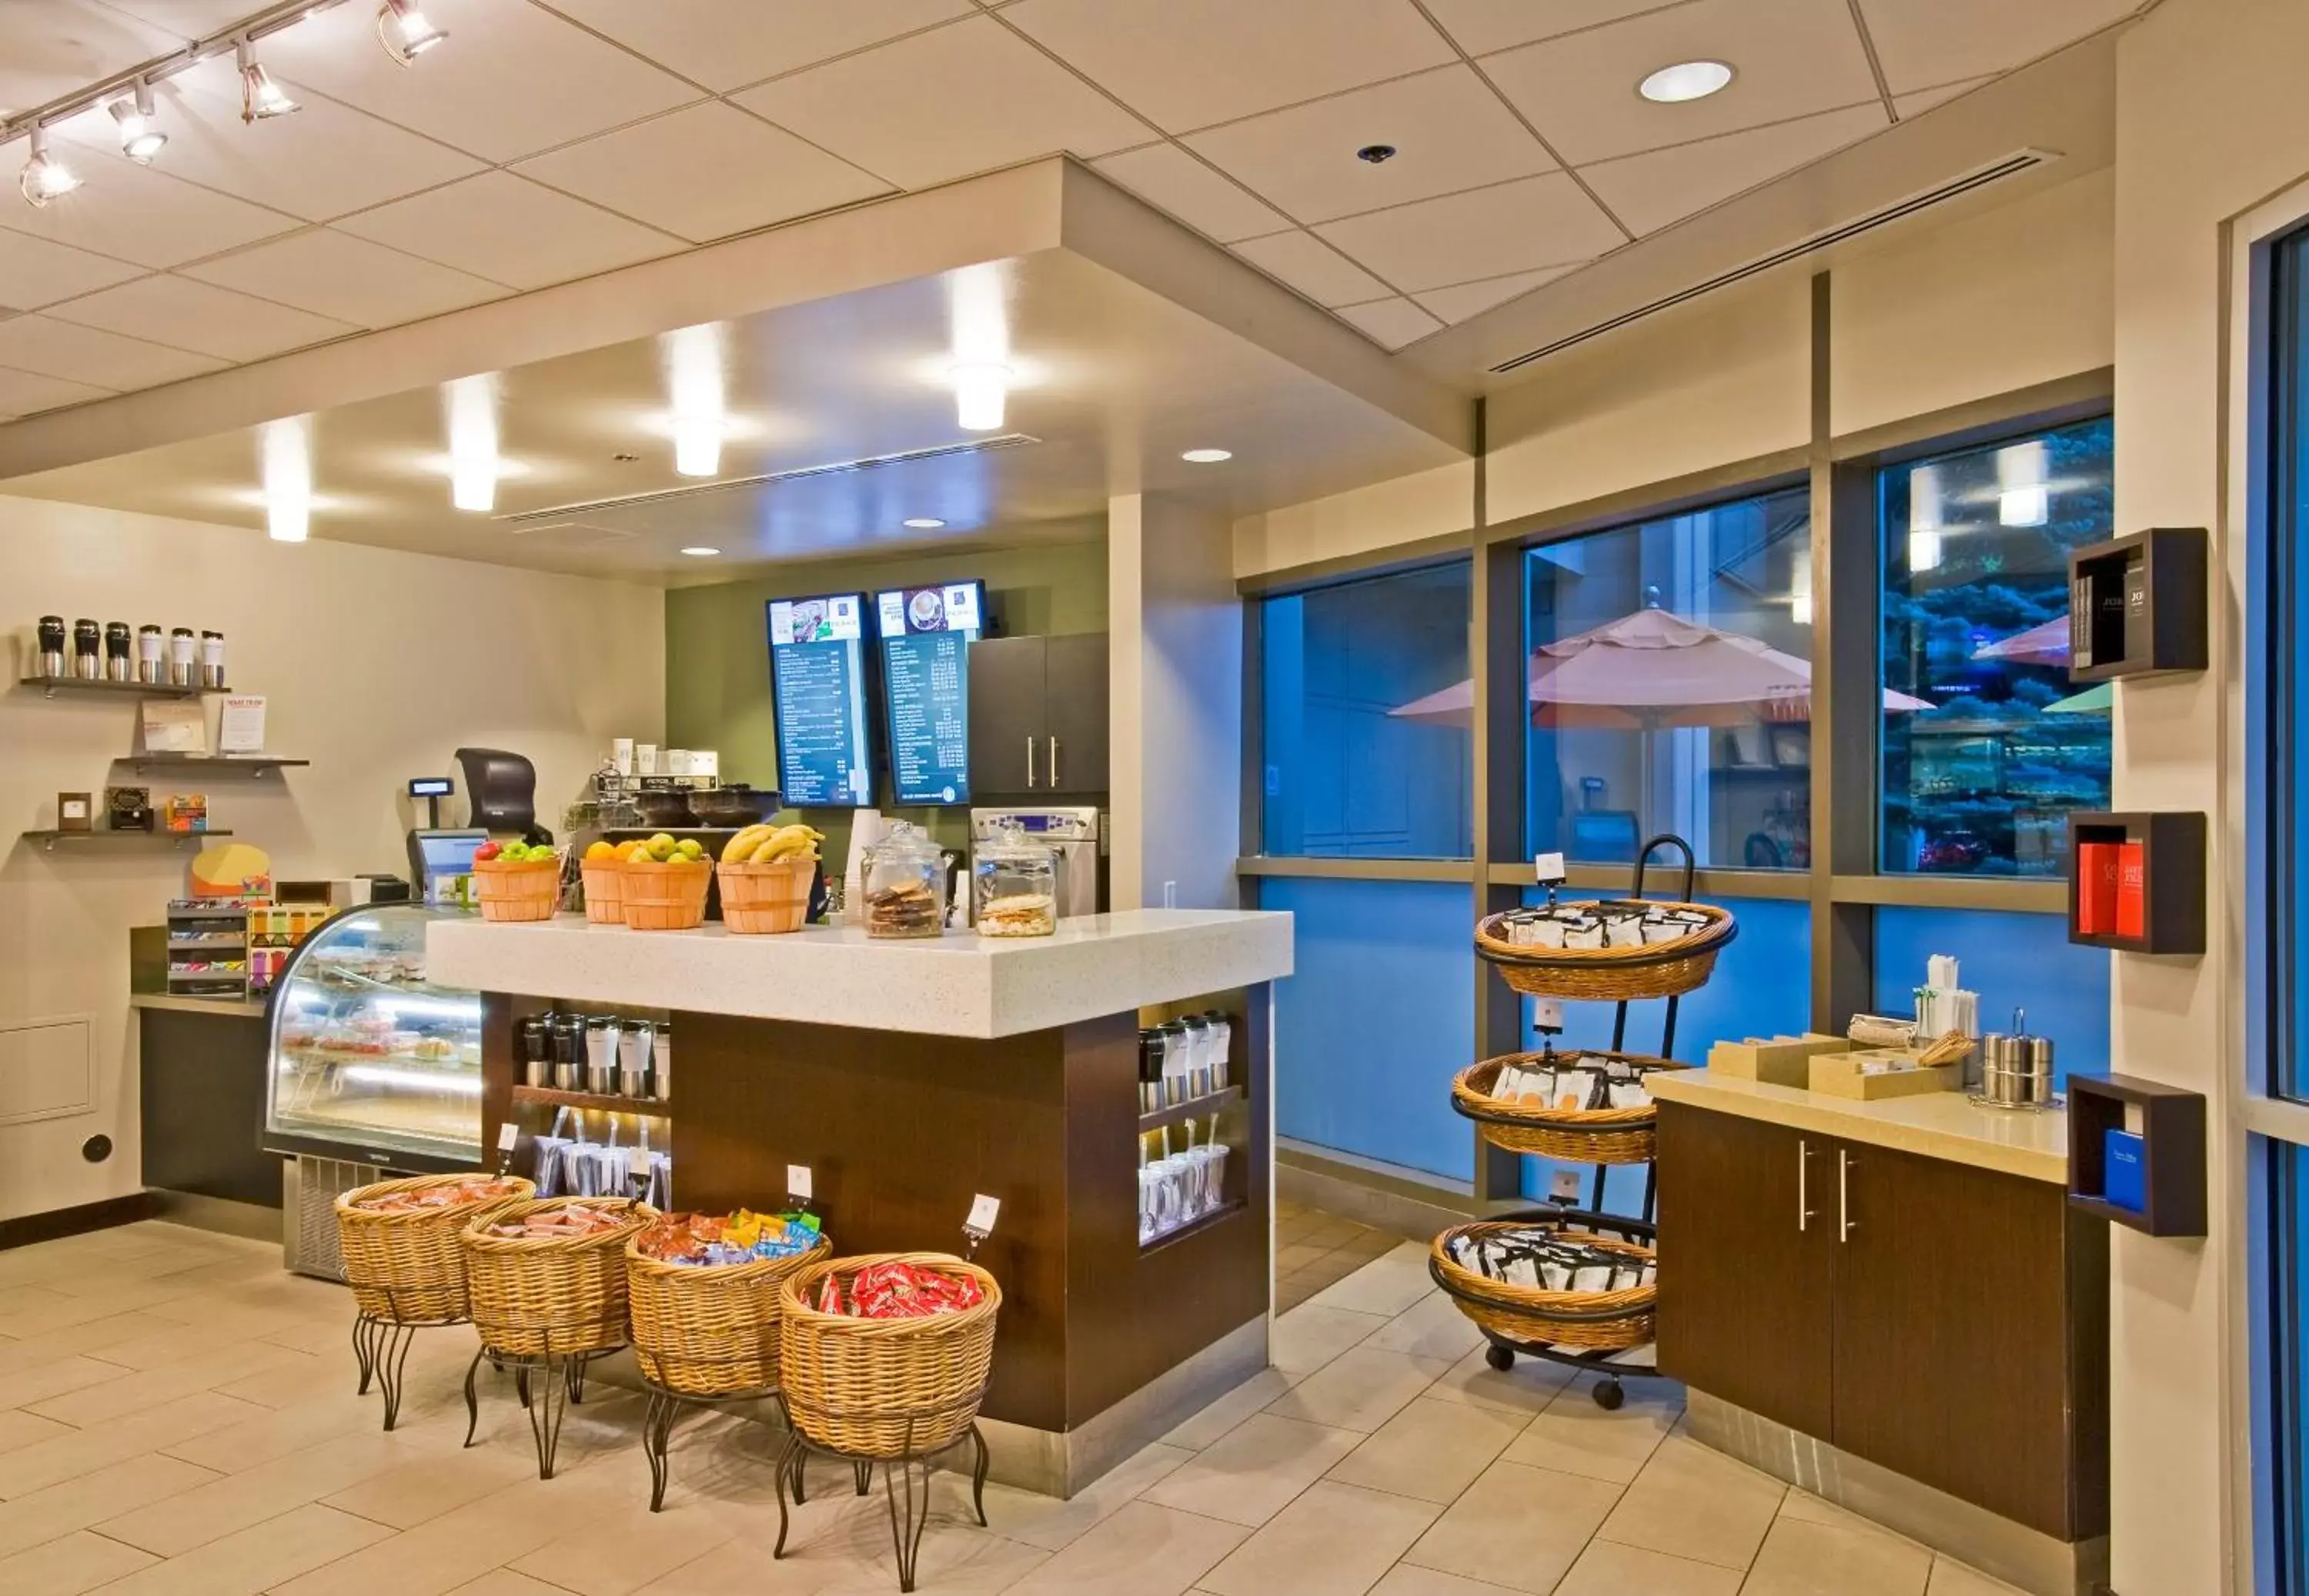 On-site shops, Restaurant/Places to Eat in Hyatt Regency Denver Tech Center